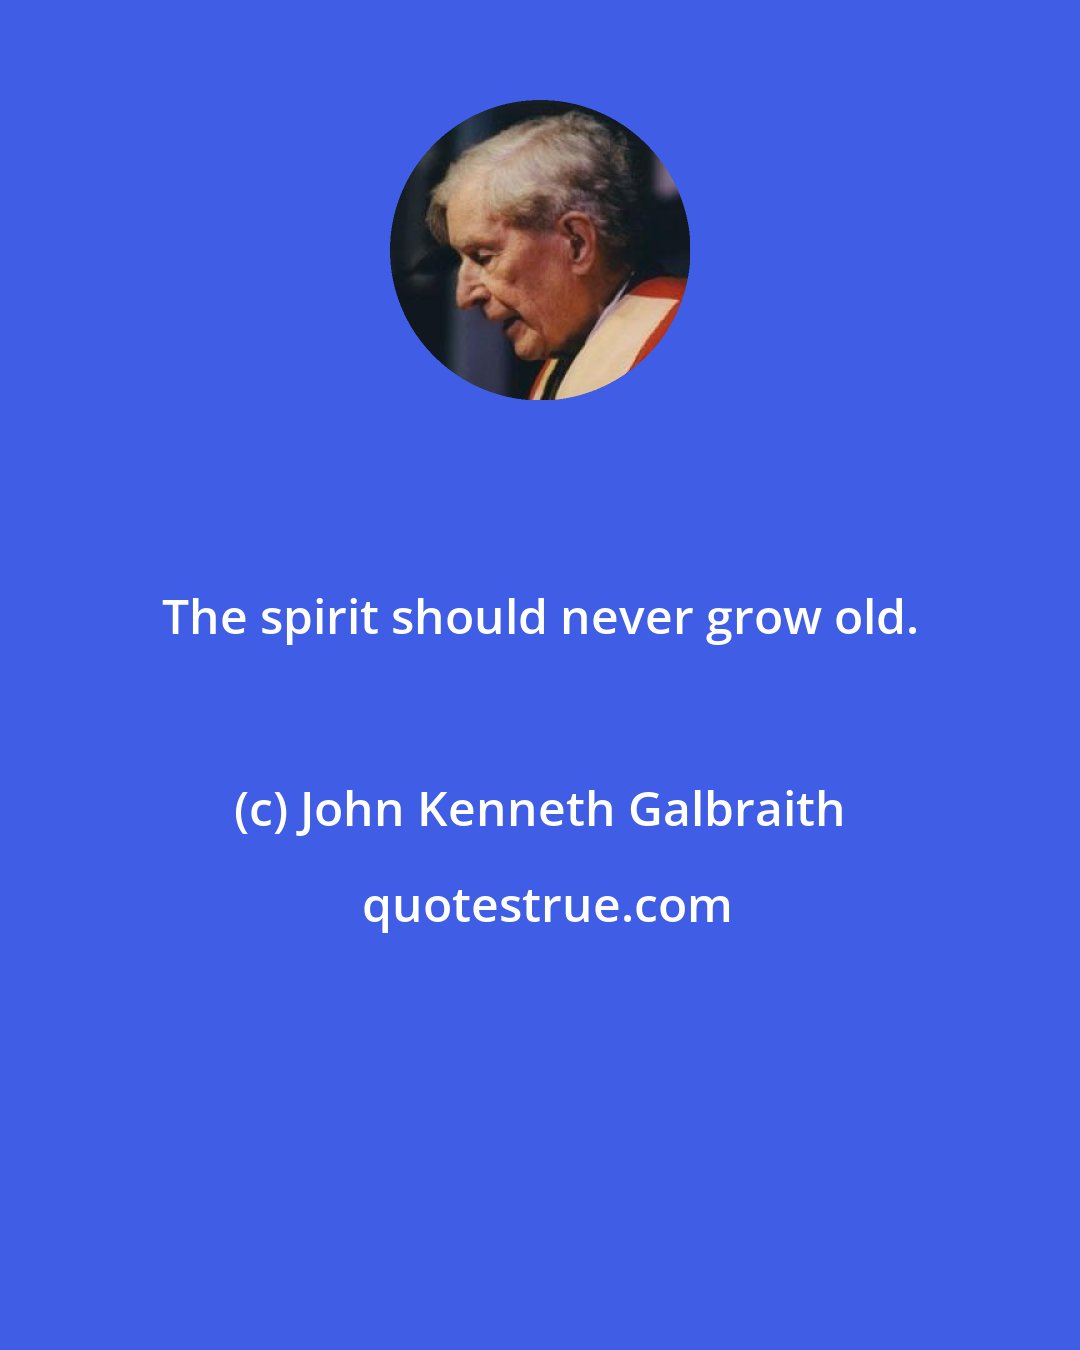 John Kenneth Galbraith: The spirit should never grow old.